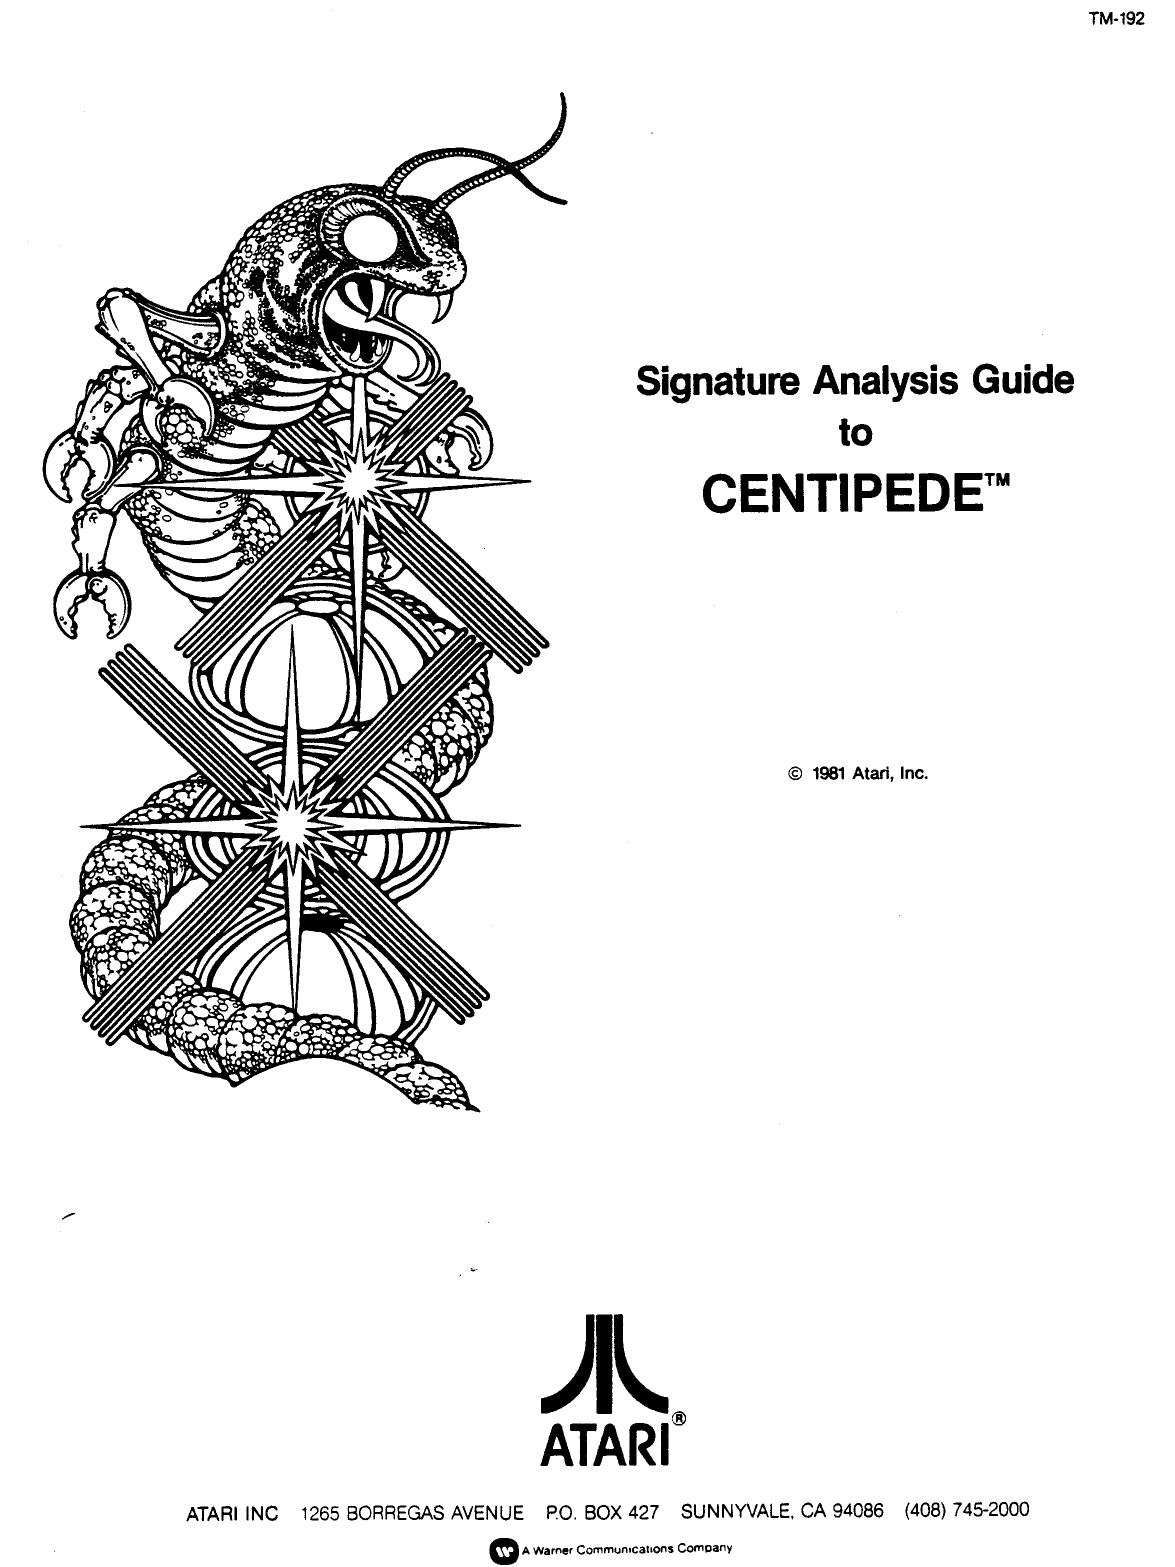 Centipede TM-192 Signature Analysis